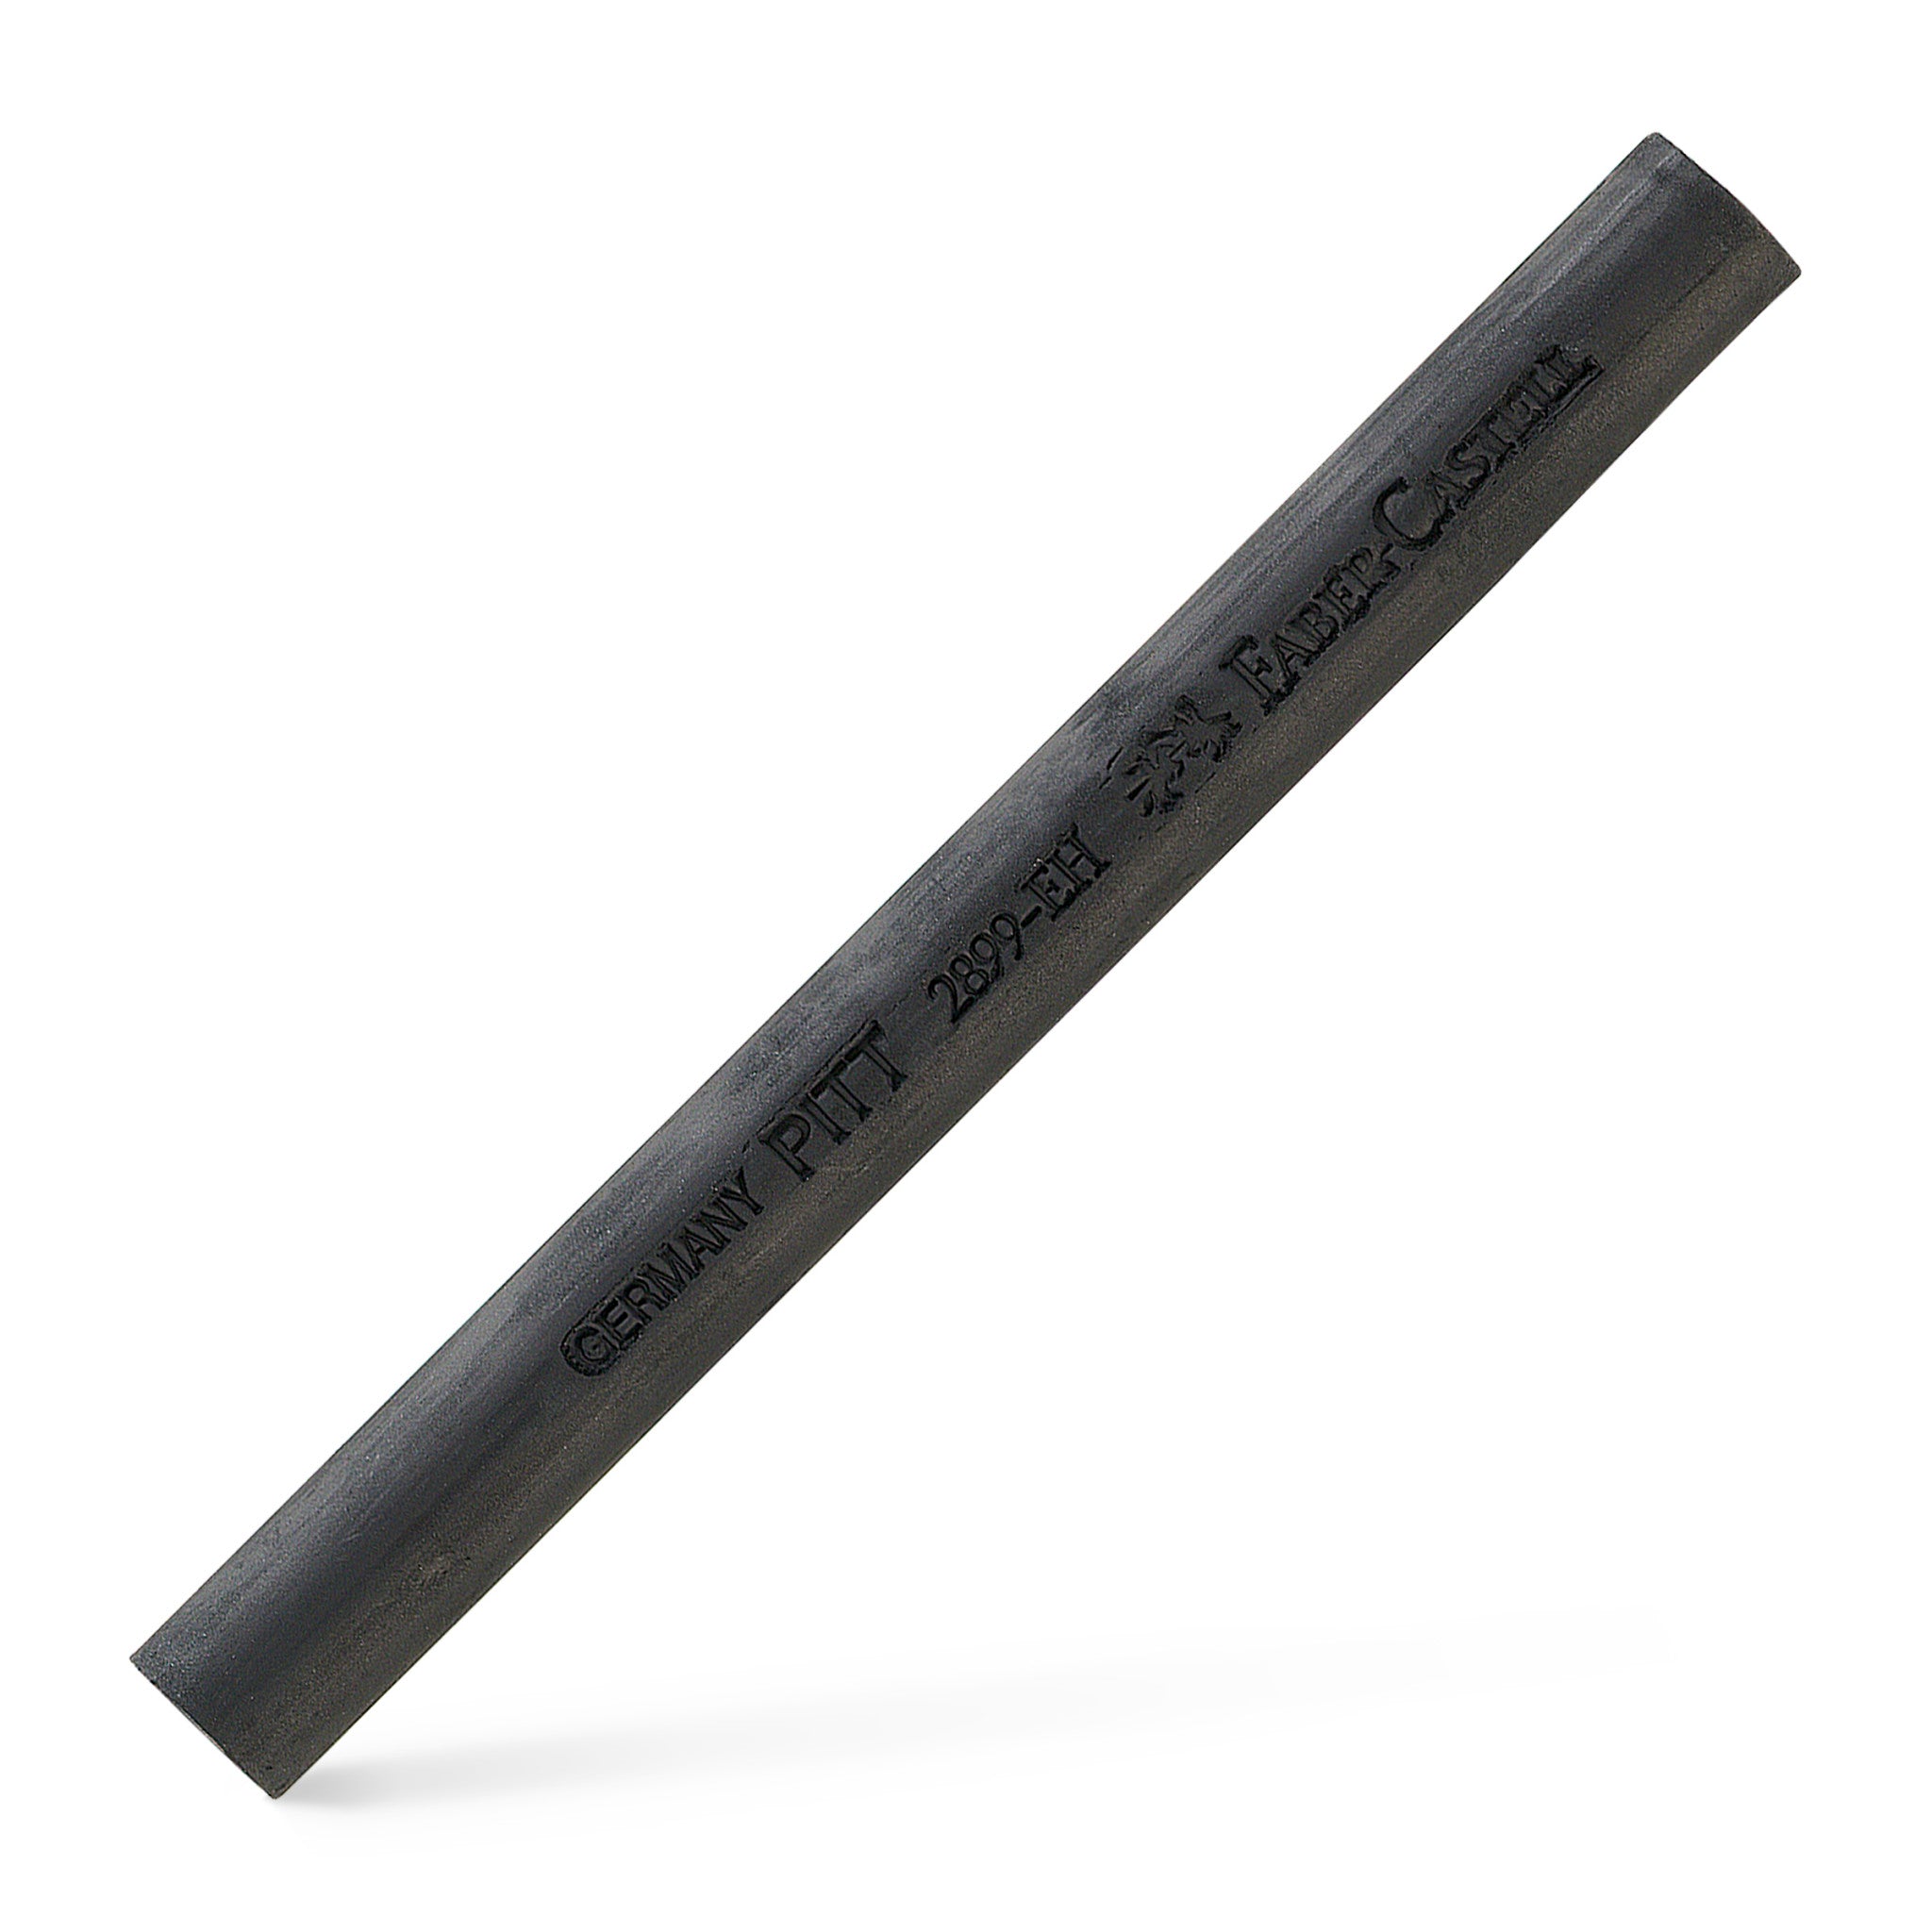 General Compressed Charcoal 4-Pack Stick Set, Black, Assorted